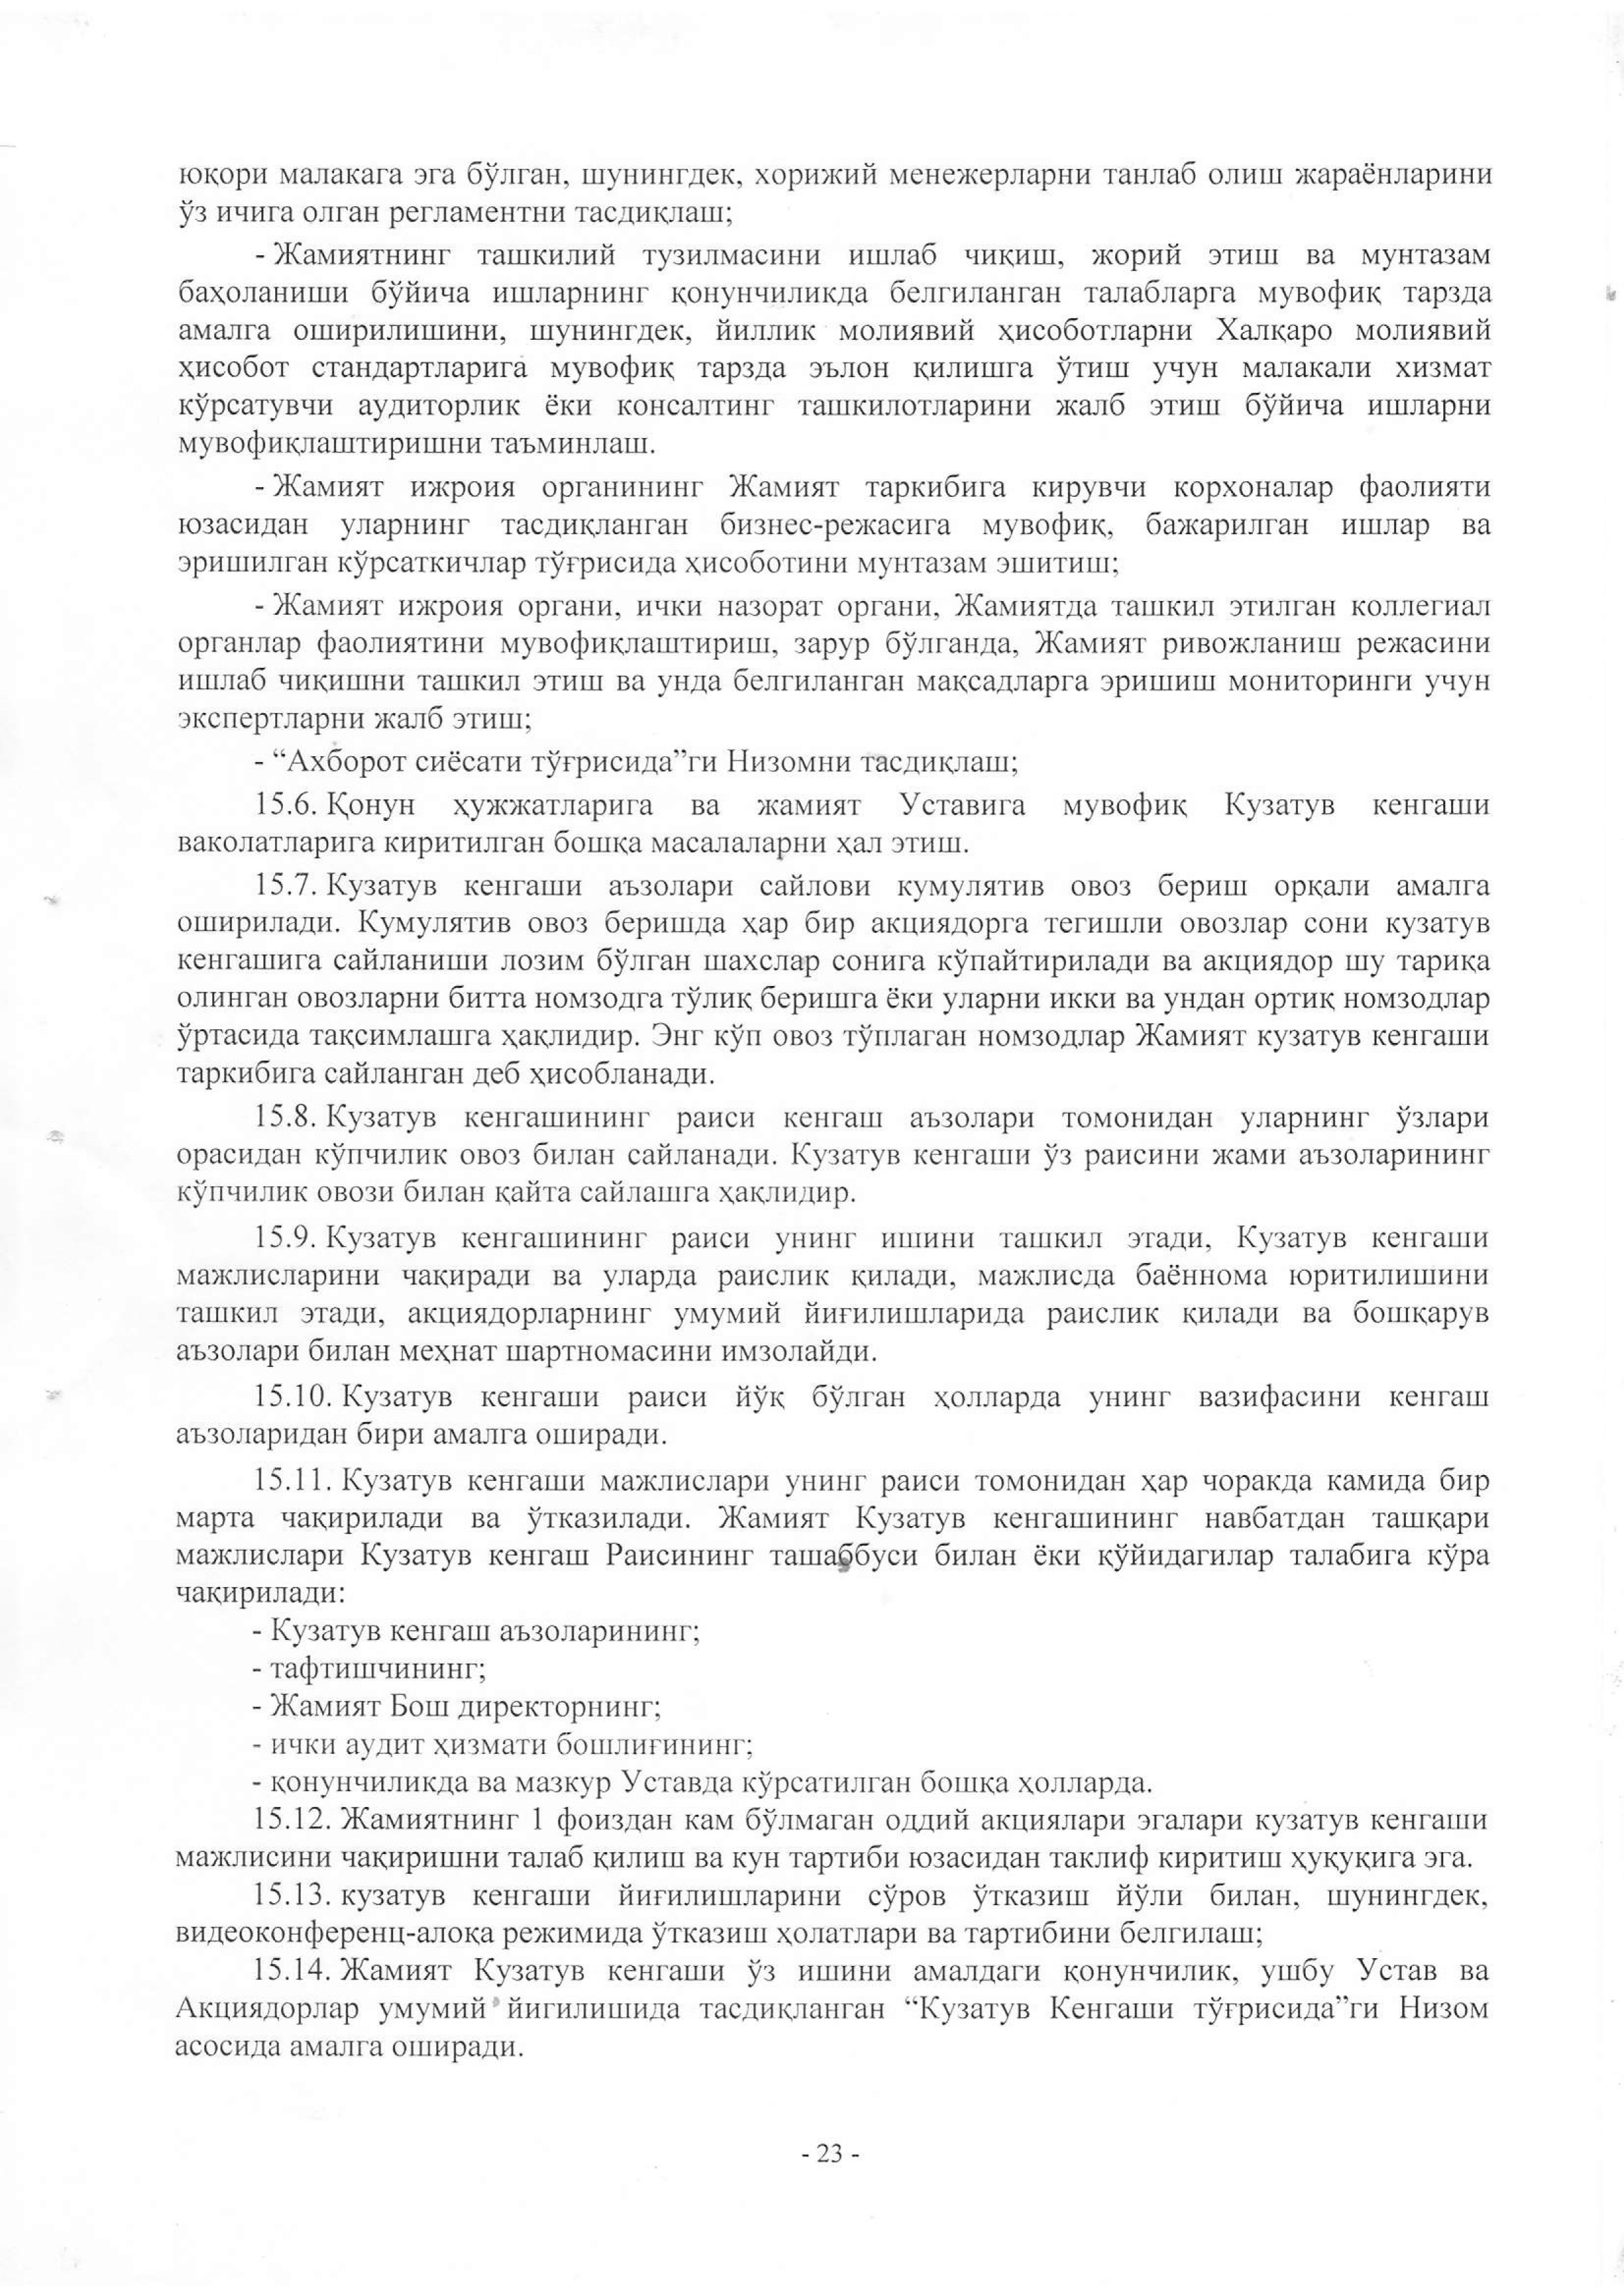 устав 2019 жахон бозори-23